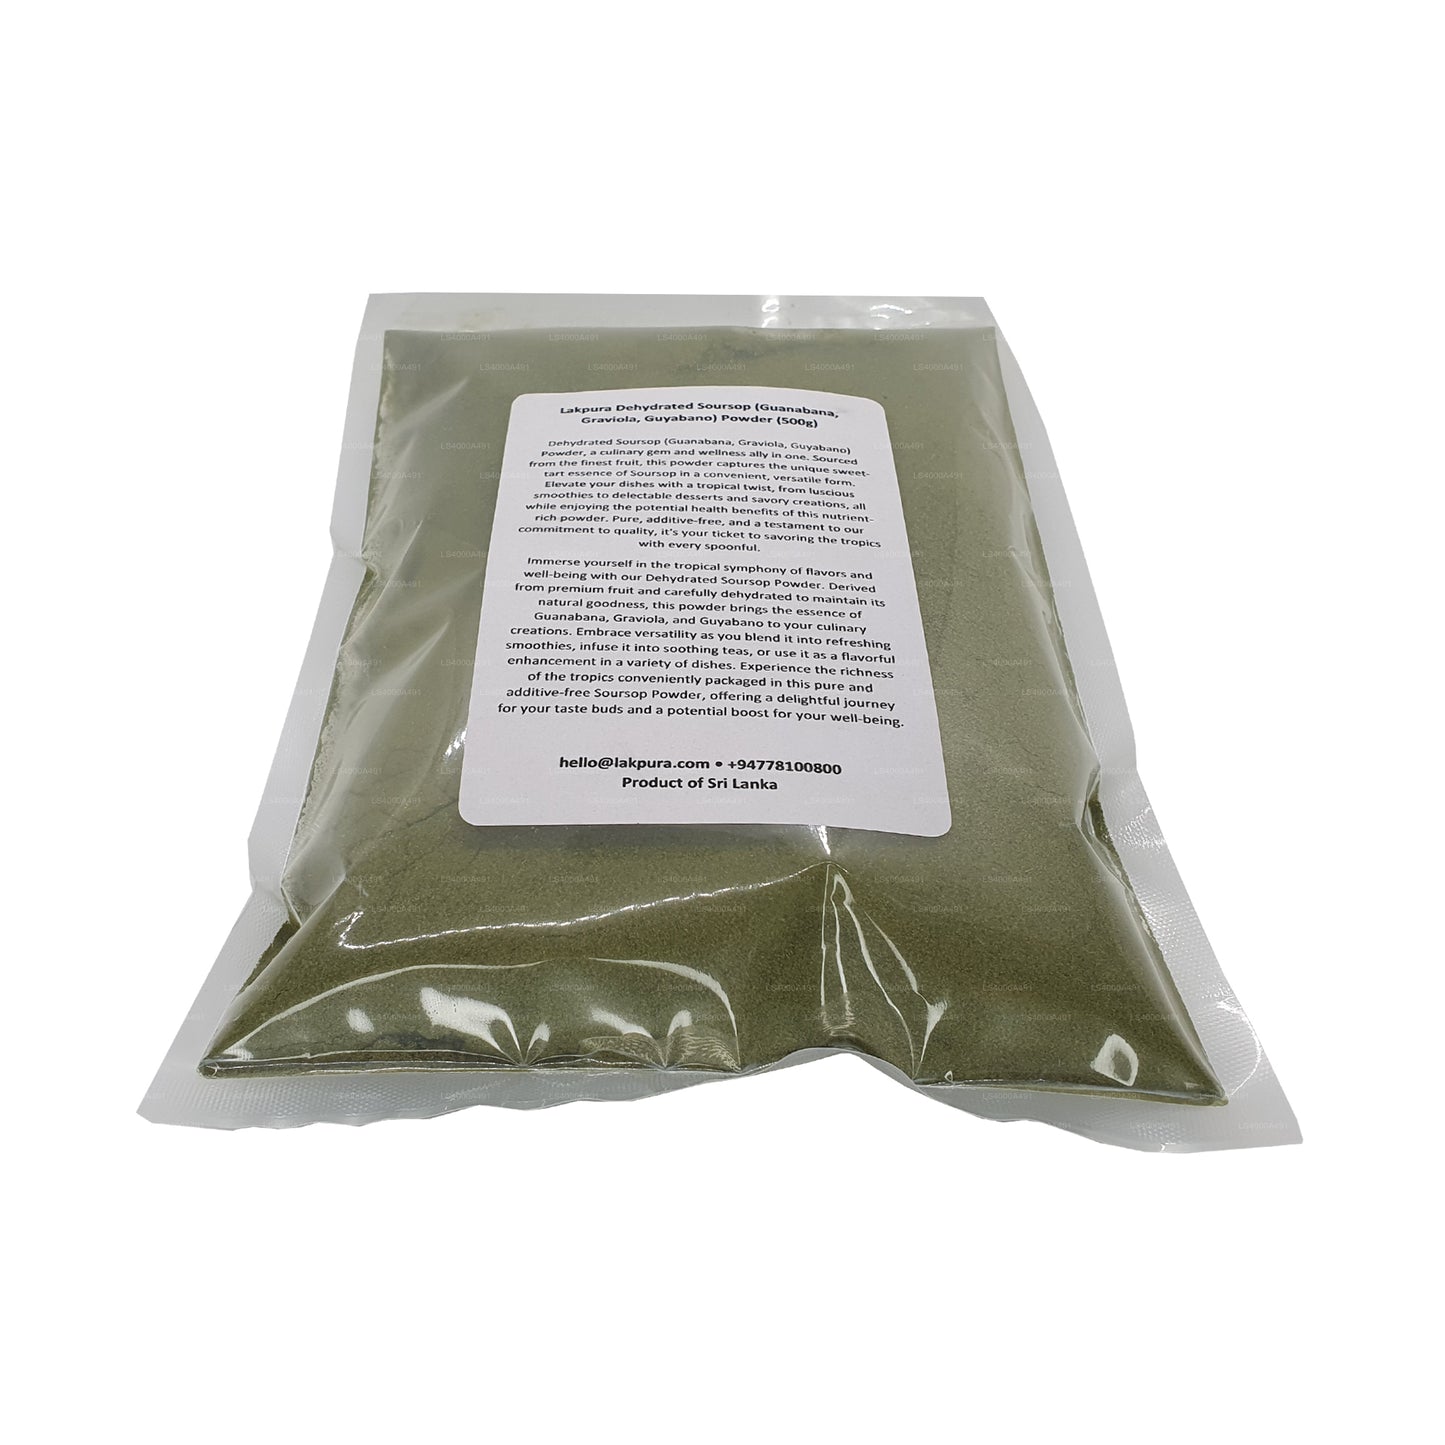 Lakpura Organiczny Soursop Graviola w proszku (100g)